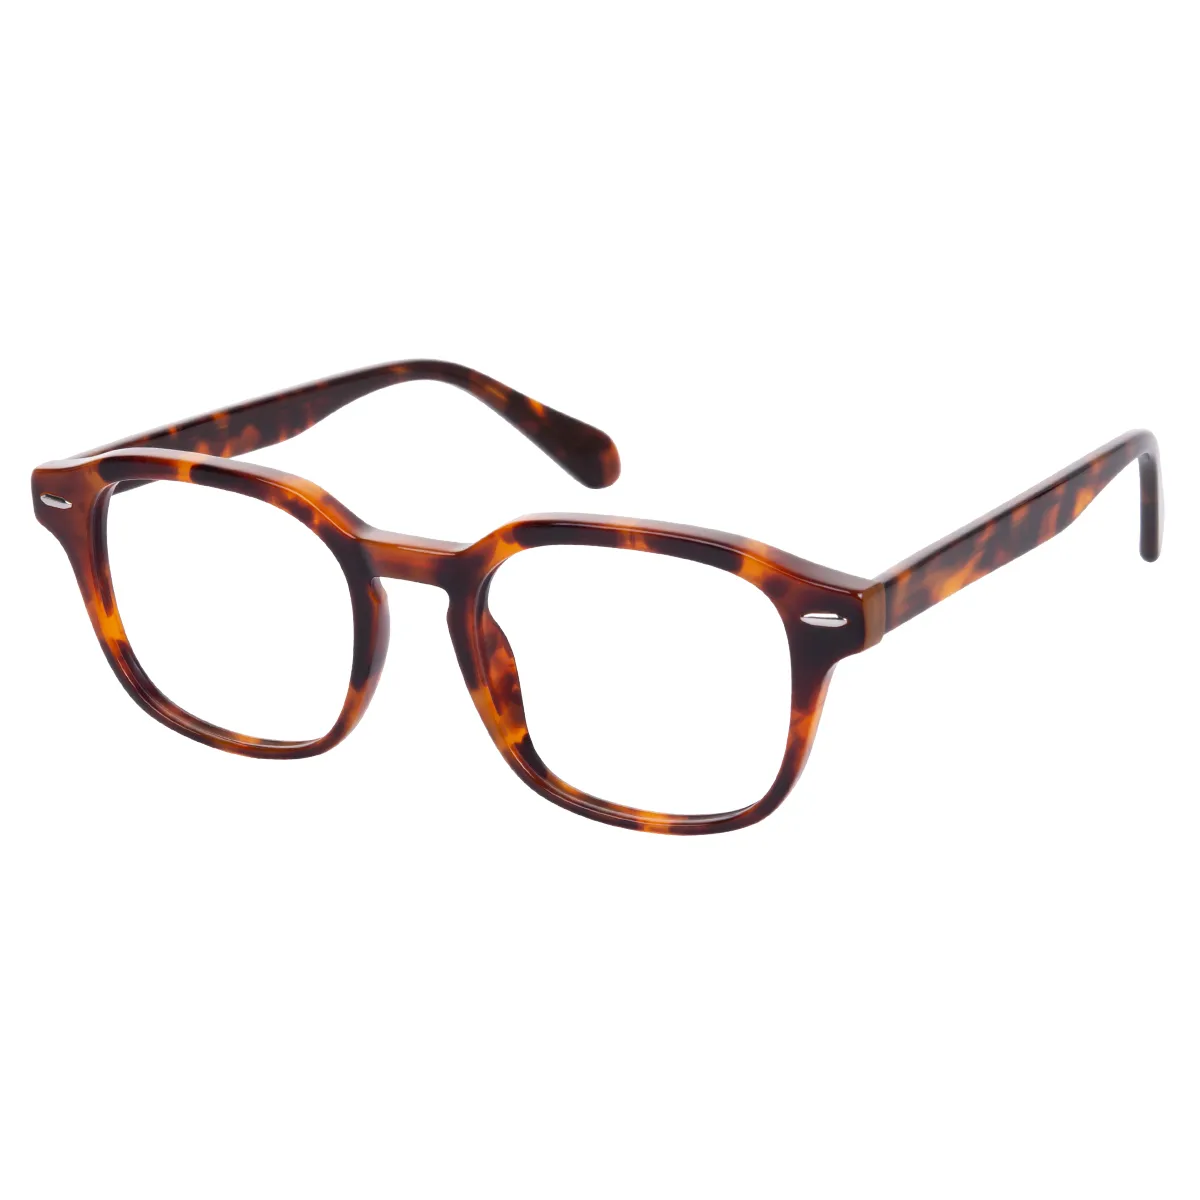 Lori - Square Tortoiseshell Glasses for Men & Women